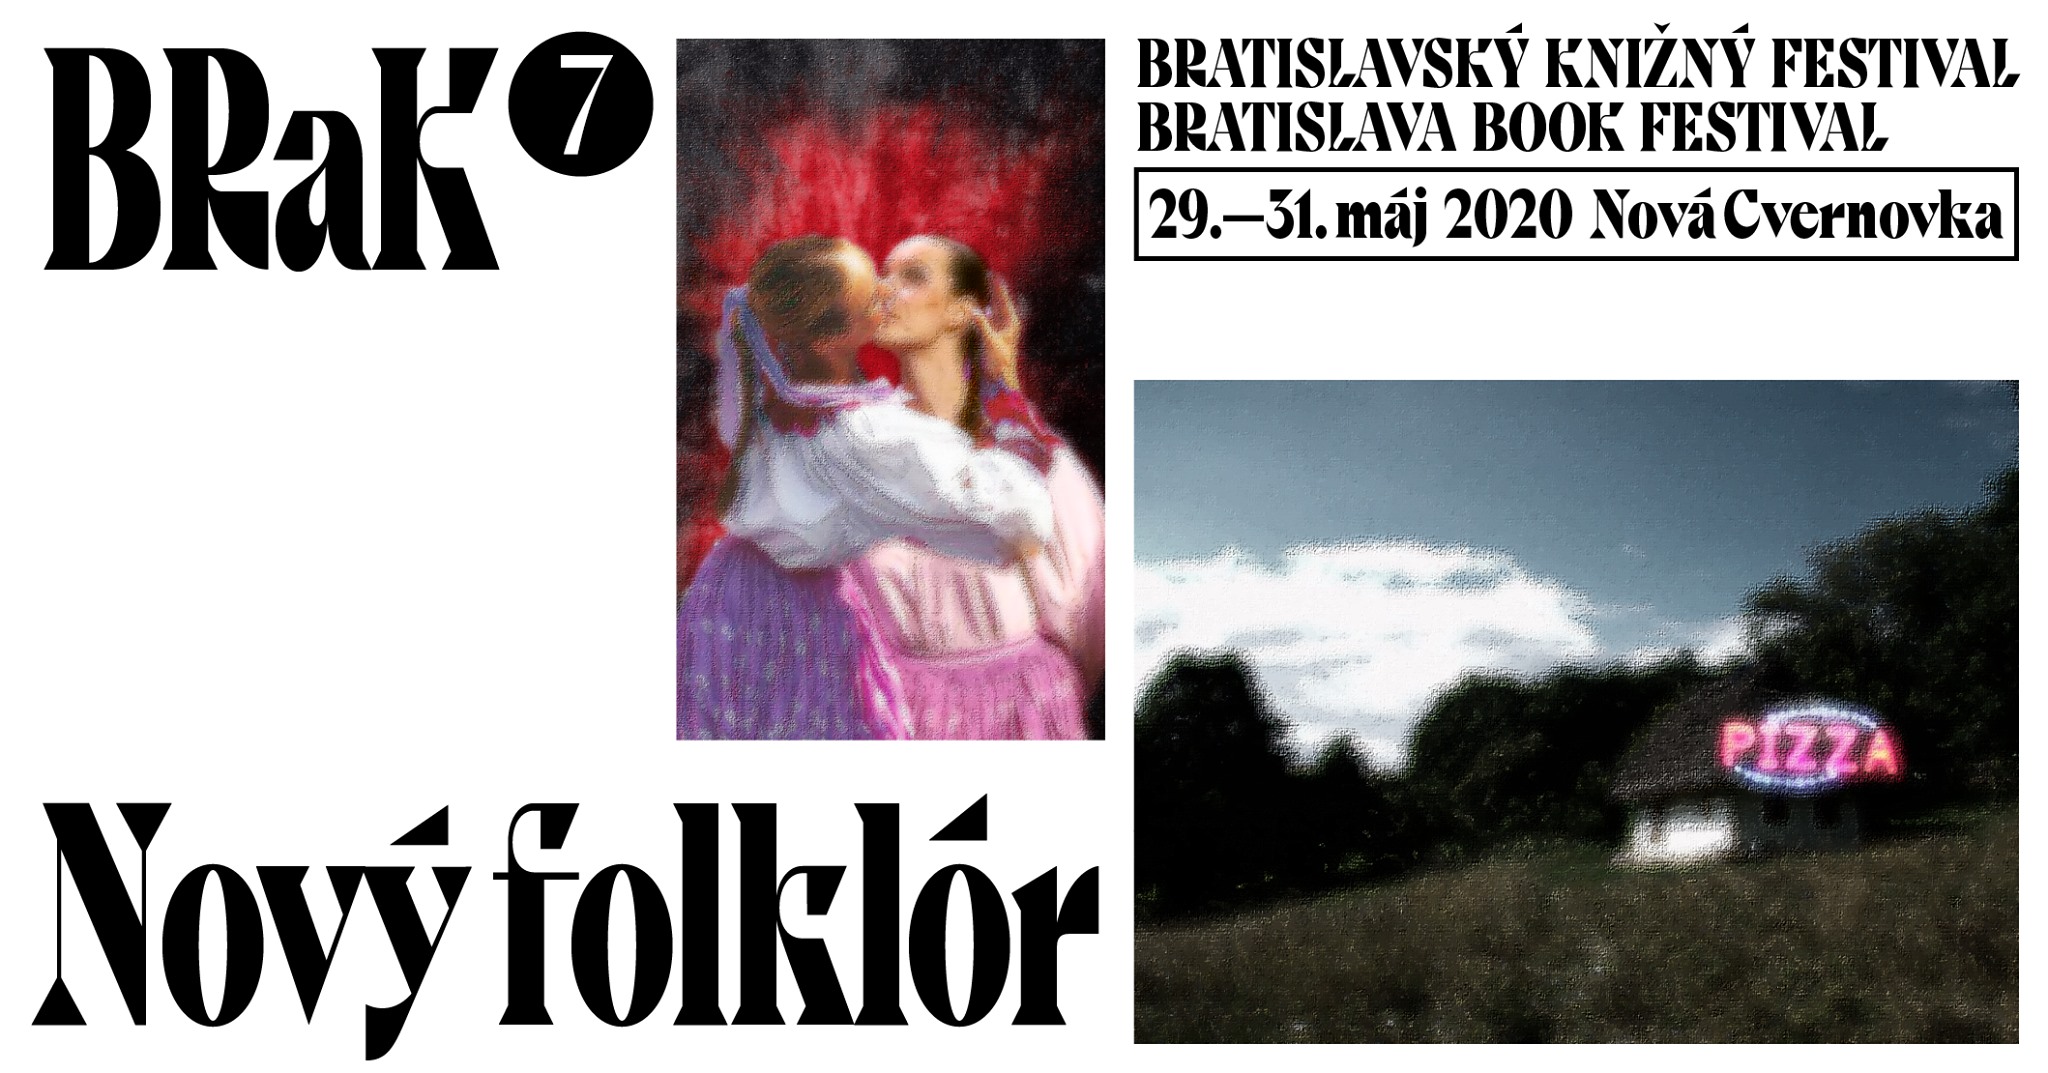 BRaK - Bratislavský knižný festival 2020